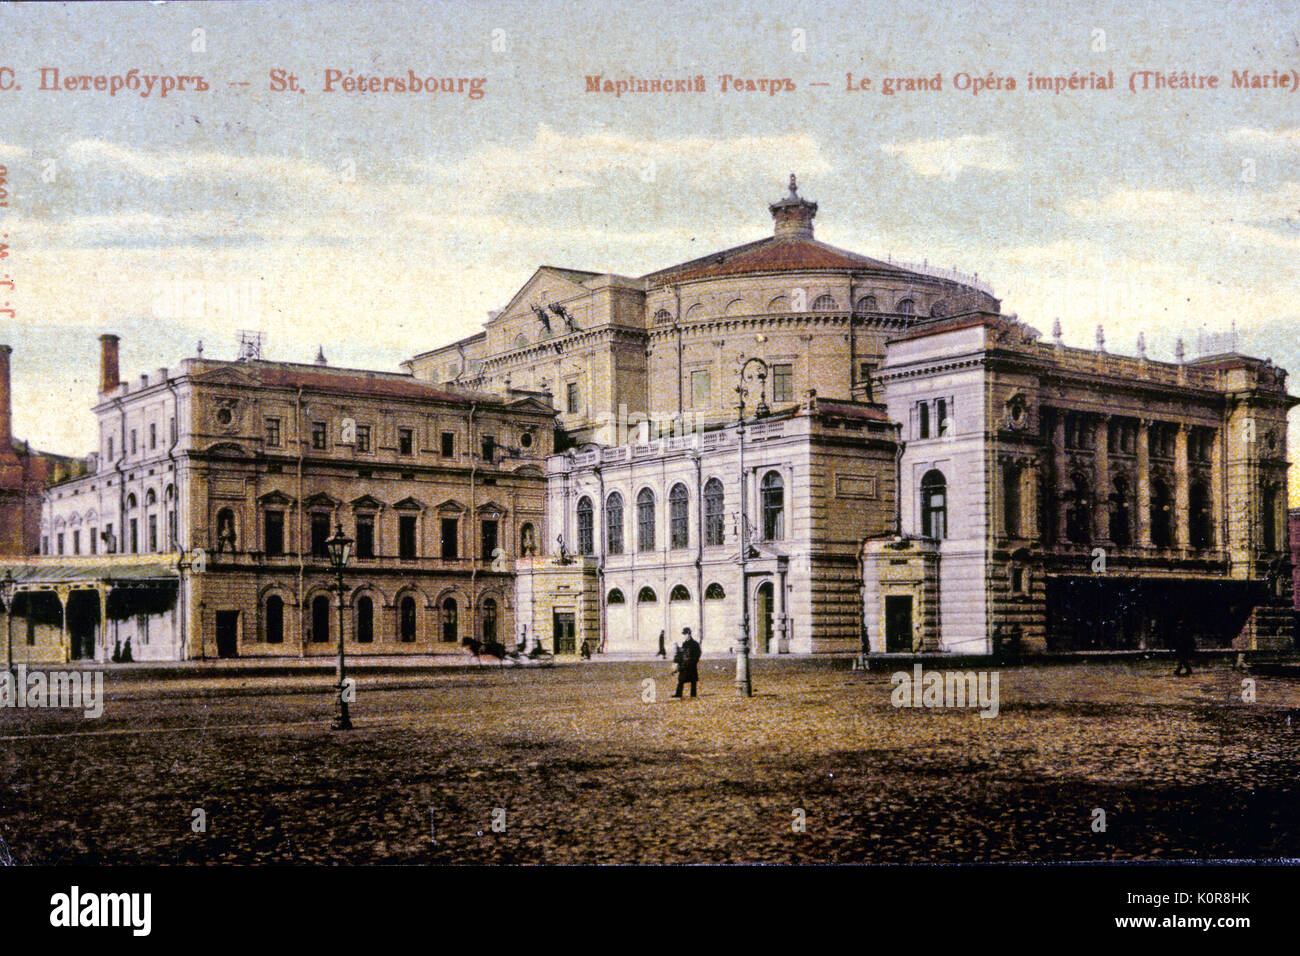 ST. PETERSBURG - théâtre Marinsky (Le Grand Opera Imperial)- fin du 19ème /début du 20e centurypostcard Banque D'Images